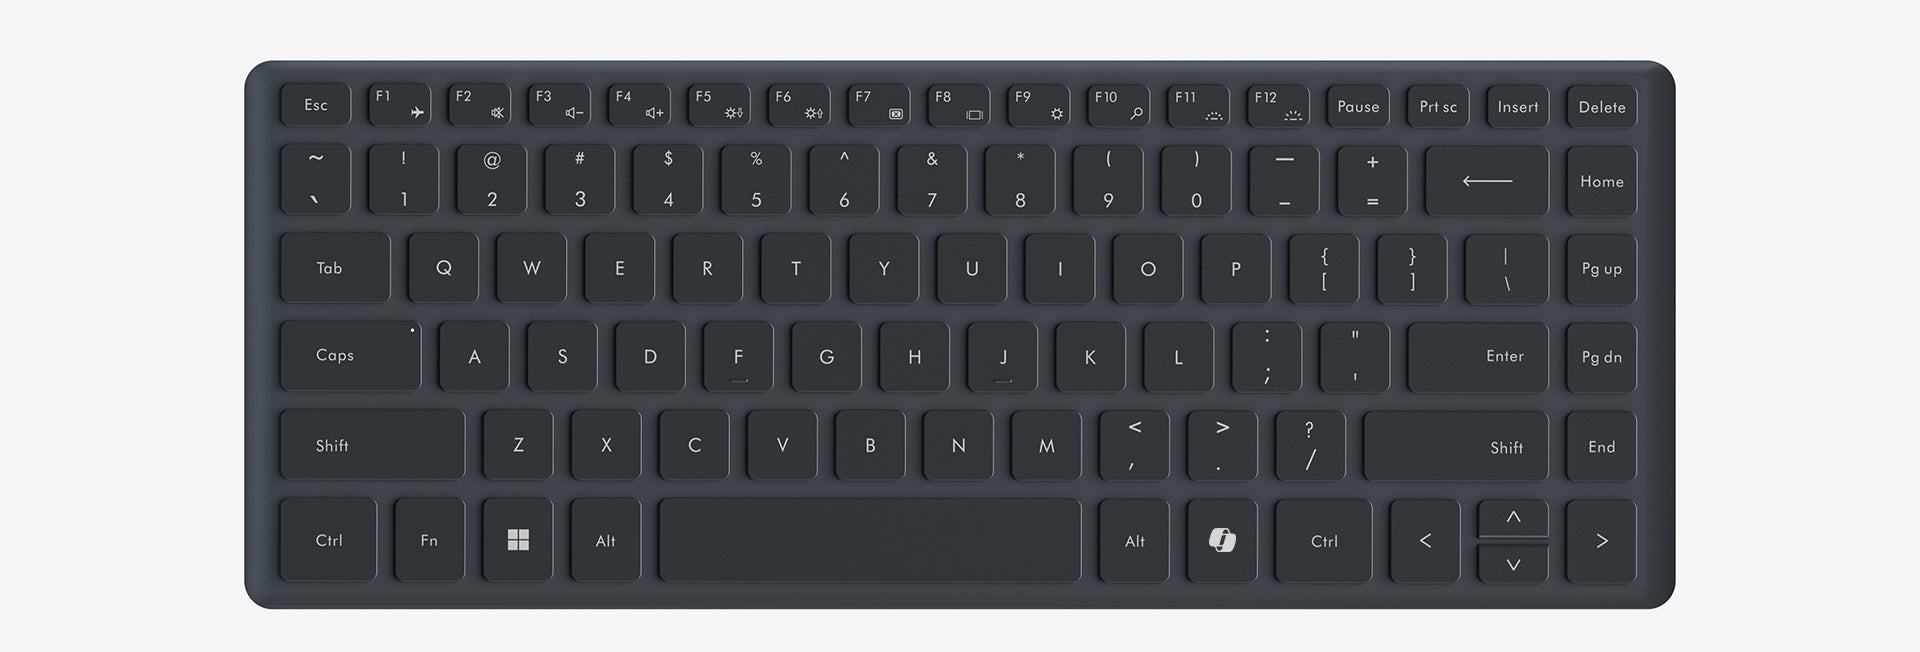 Minisforum V3 3-in-1 Tablet mit magnetischer Tastatur